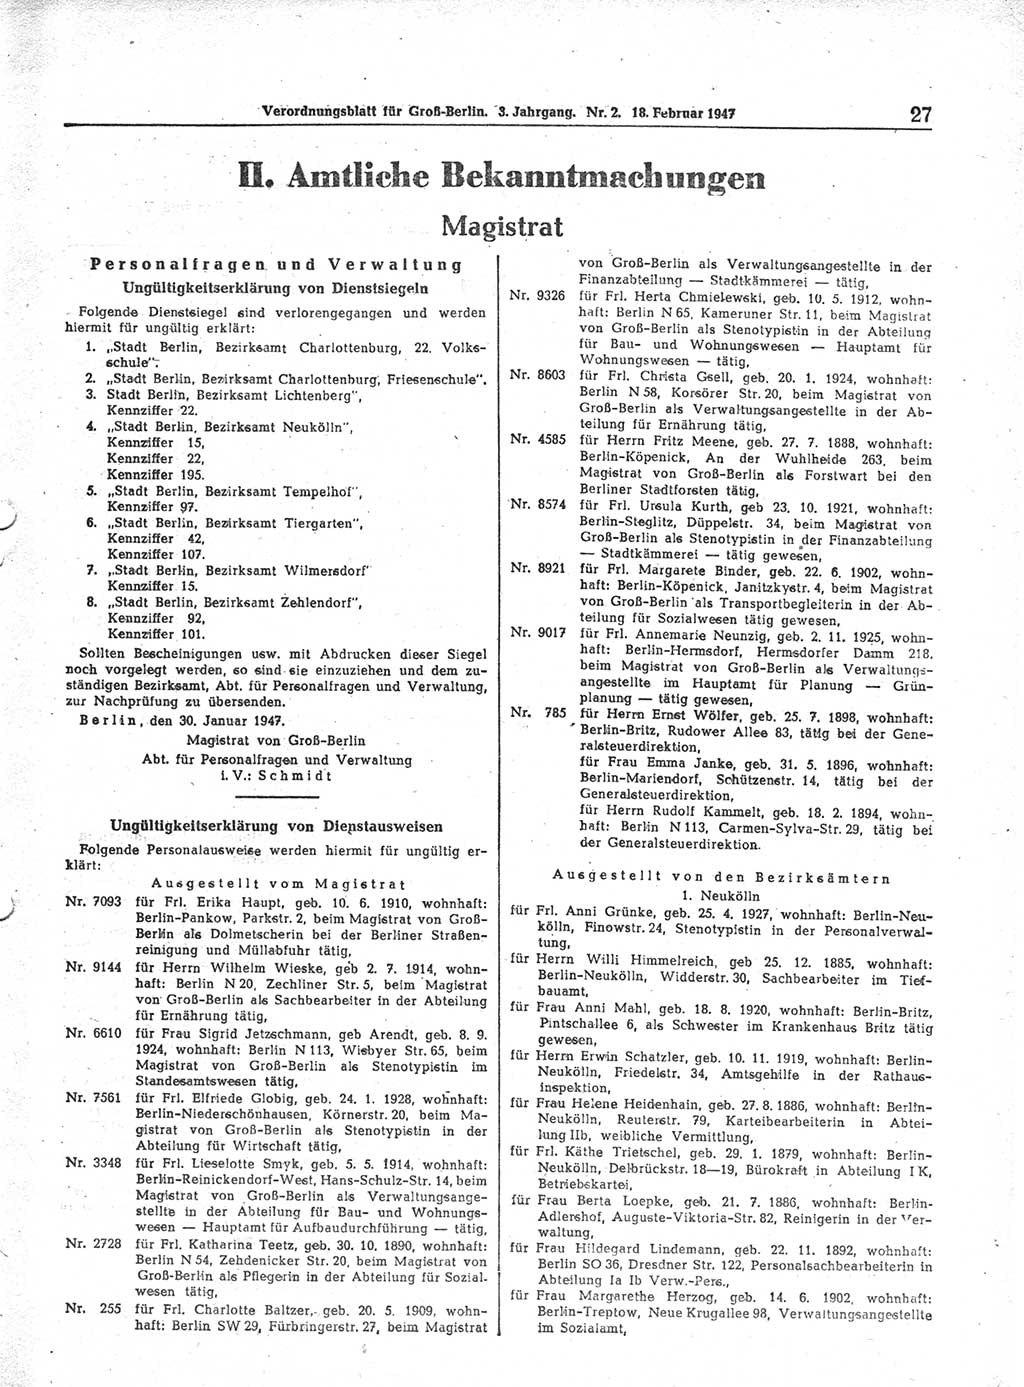 Verordnungsblatt (VOBl.) für Groß-Berlin 1947, Seite 27 (VOBl. Bln. 1947, S. 27)